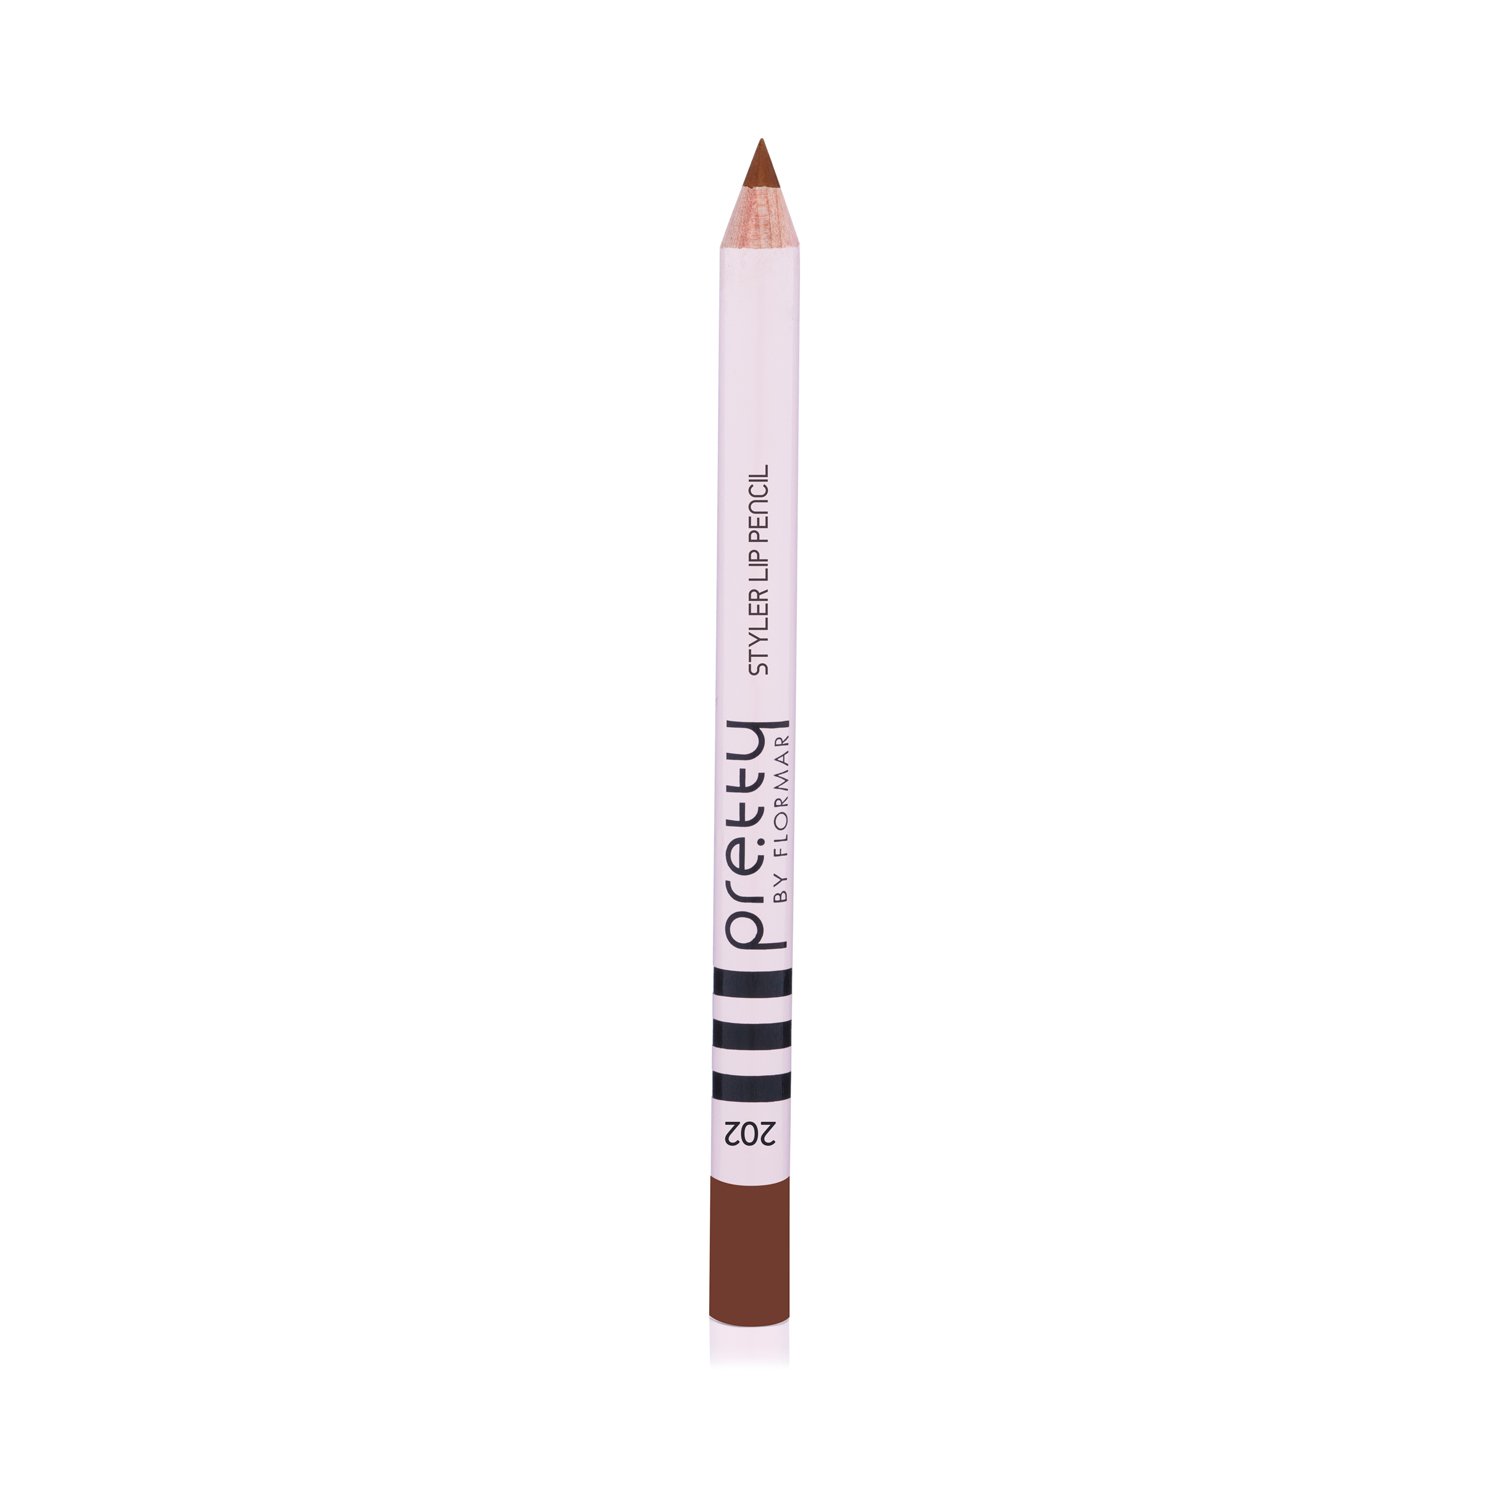 Олівець для губ Pretty Lip Pencil, відтінок 202 (Nude), 1.14 г (8000018782780) - фото 1